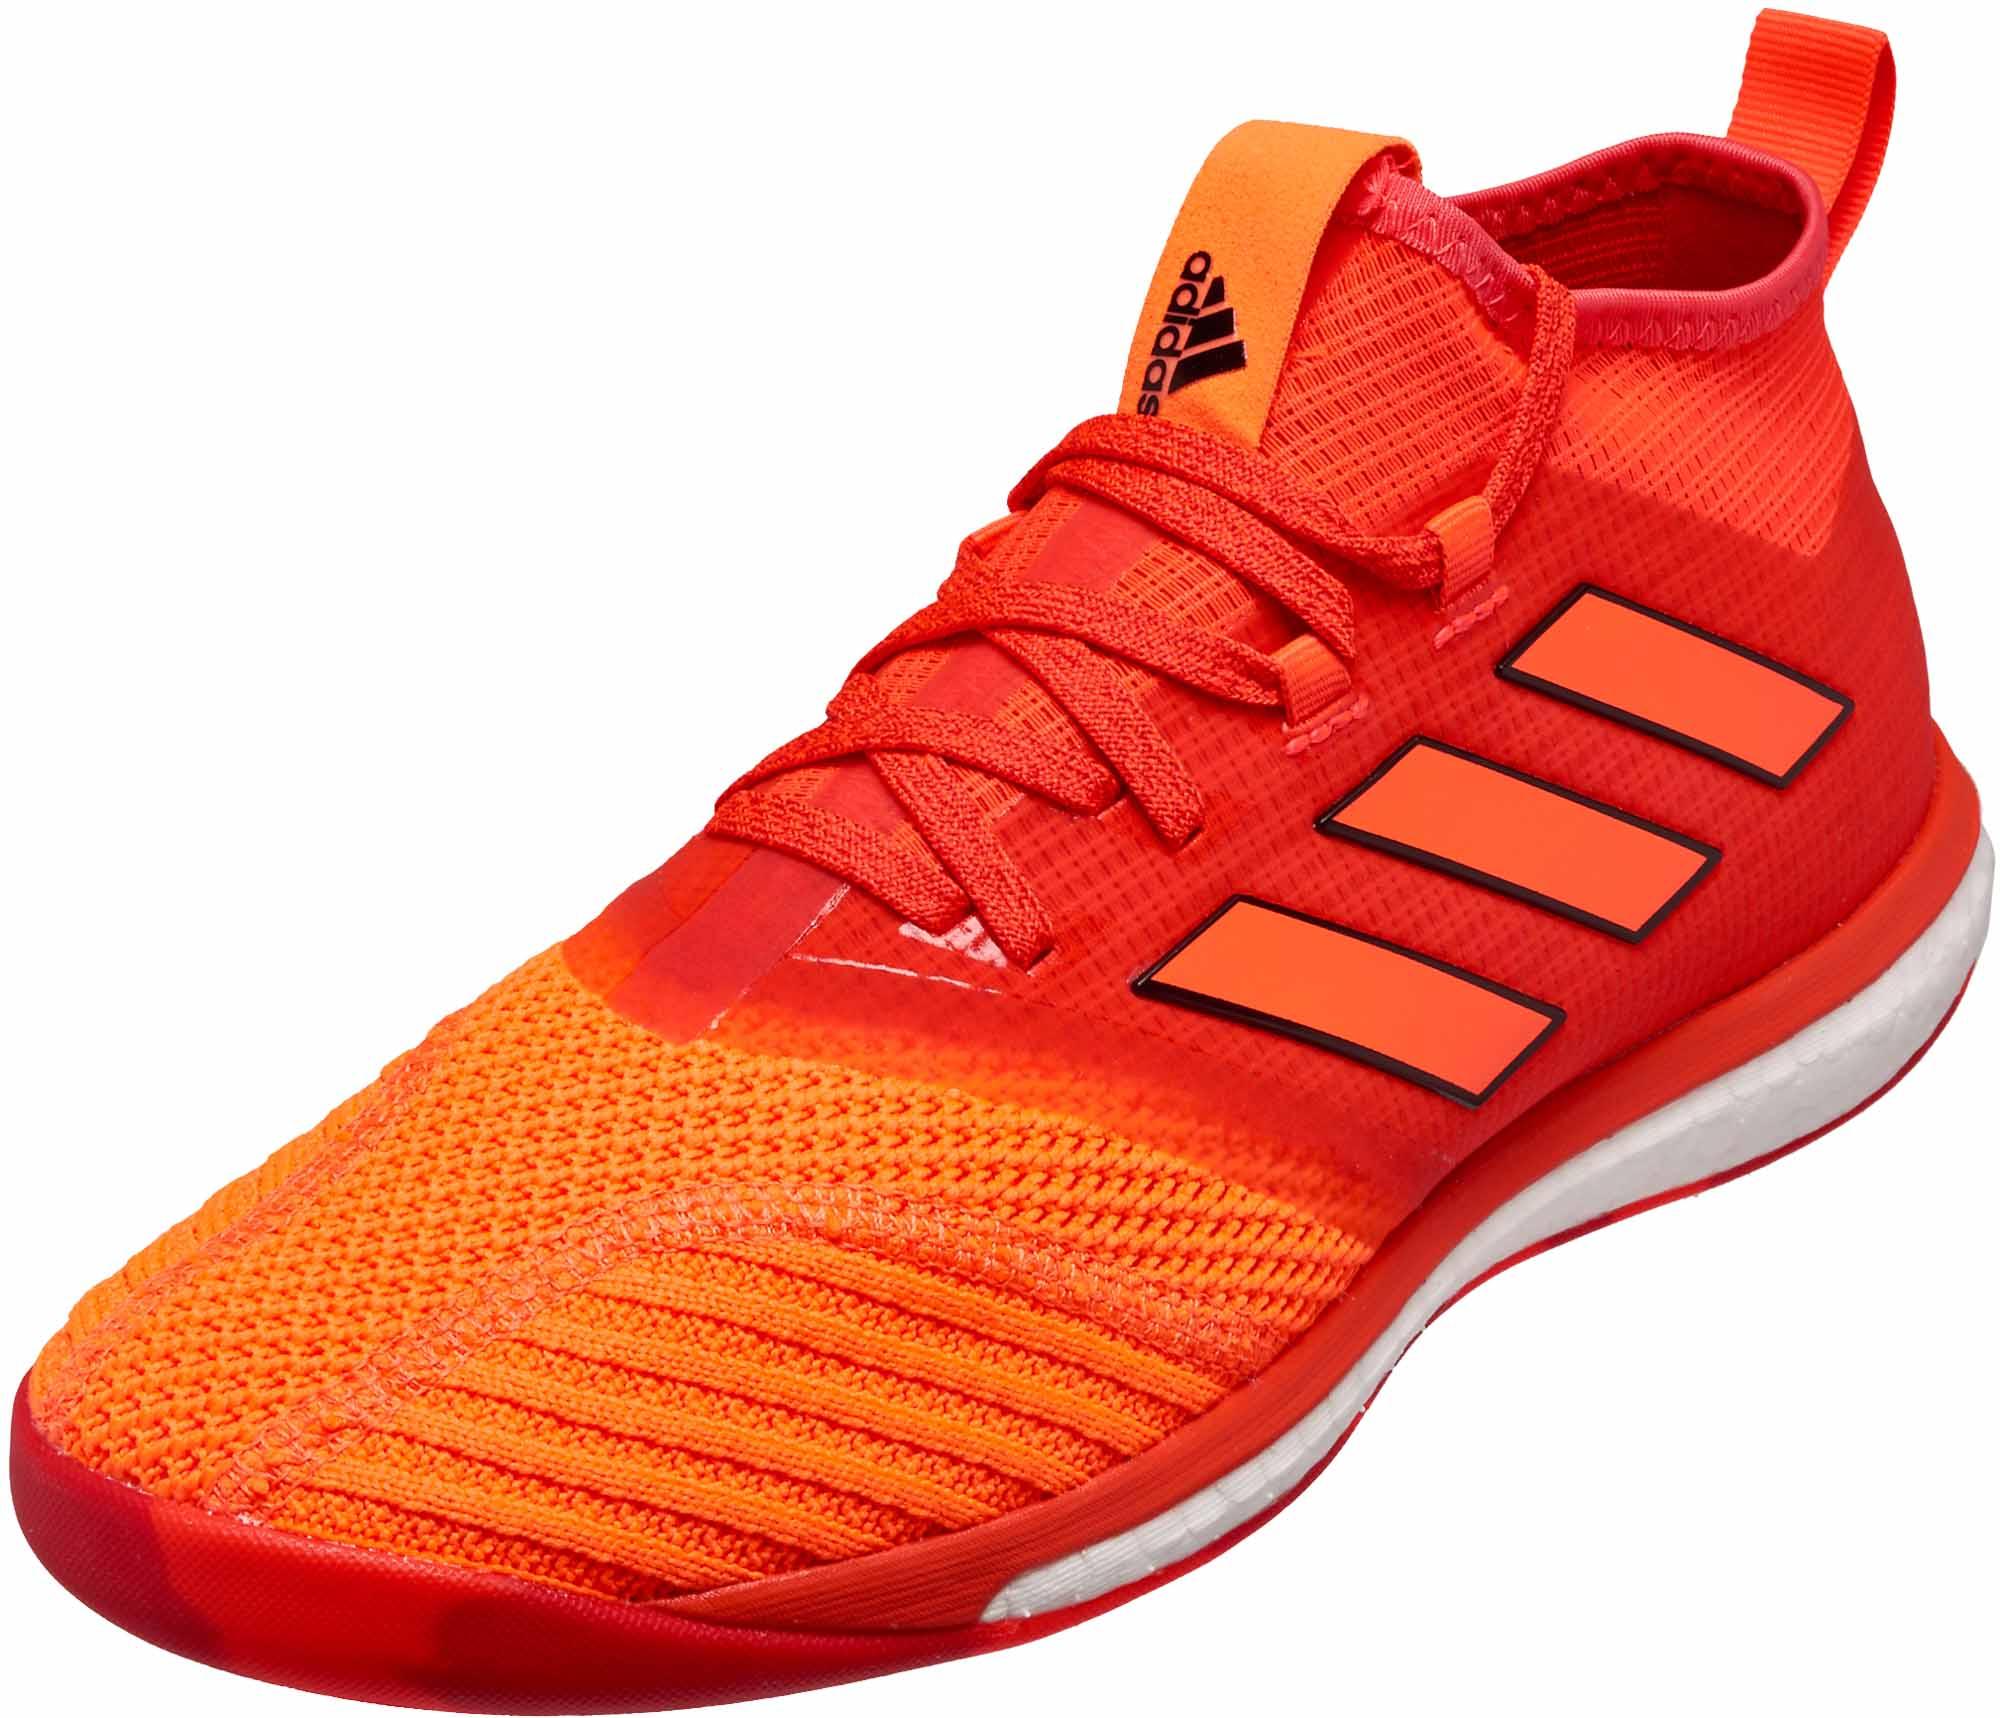 adidas Tango 17.1 Trainer - Solar Red & Orange